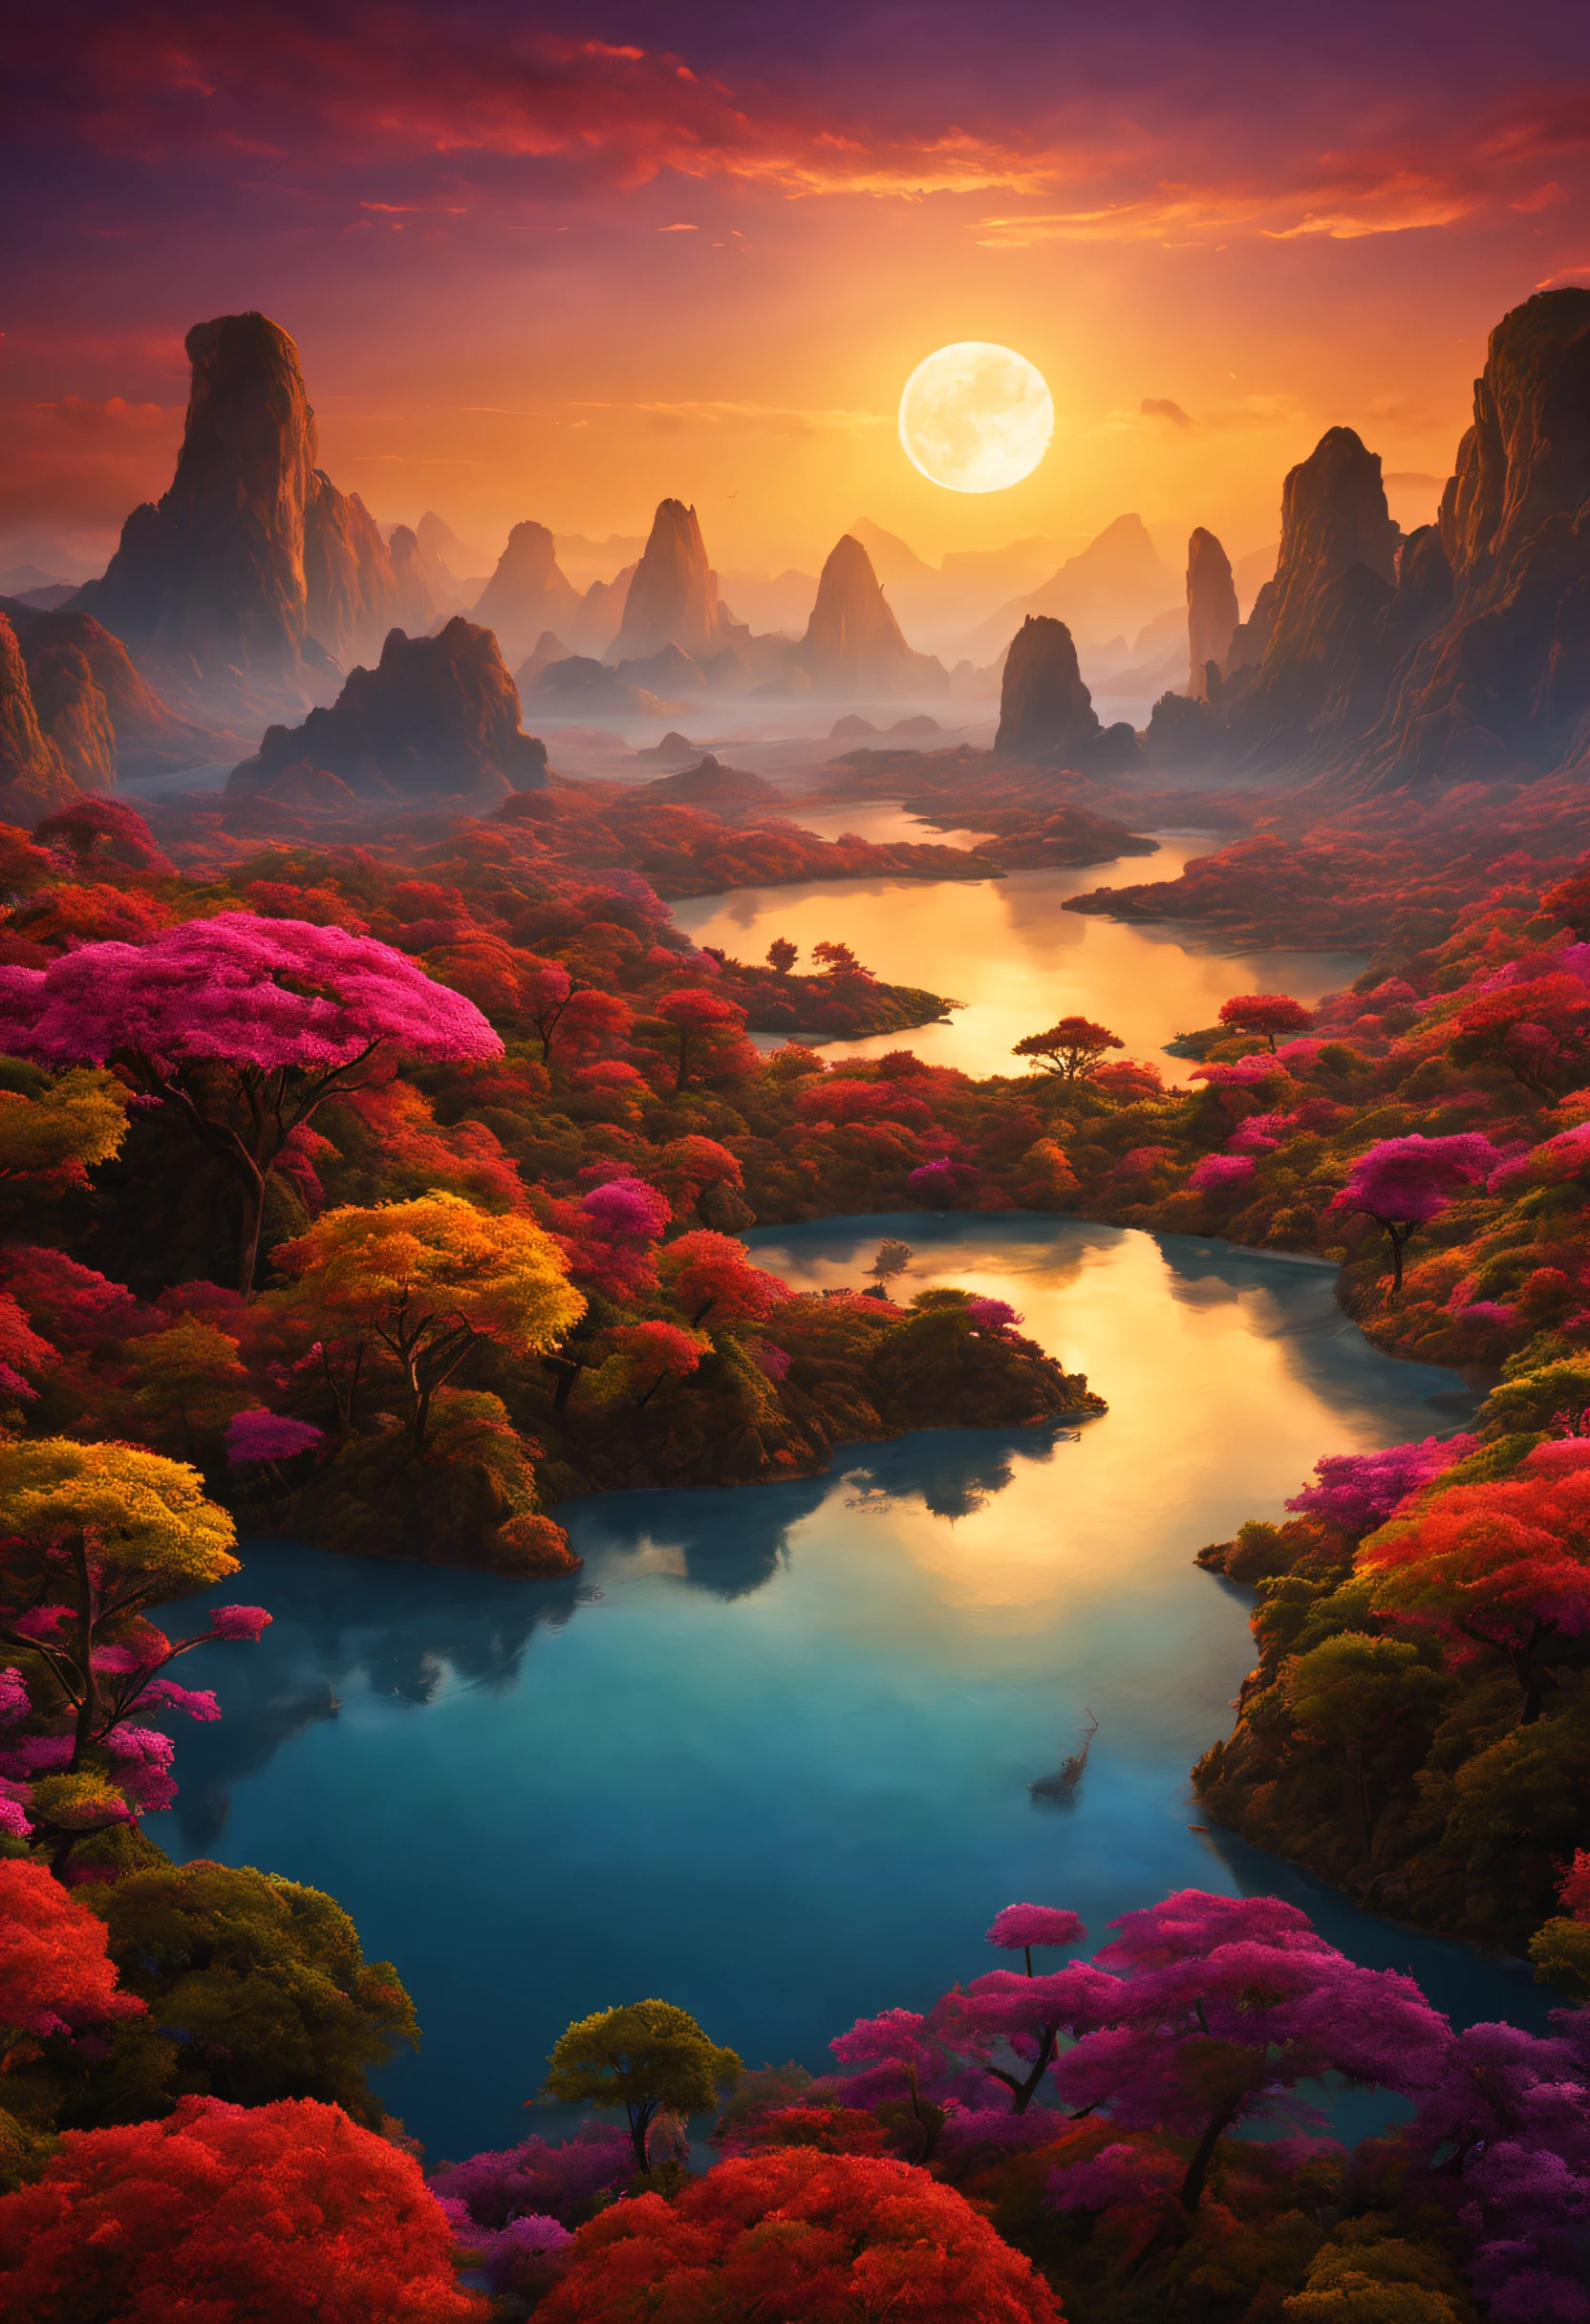 Eine wunderschöne imaginäre Landschaft auf einem exotischen Planeten mit vielen farbigen Sonnenuntergängen und einem außergewöhnlichen